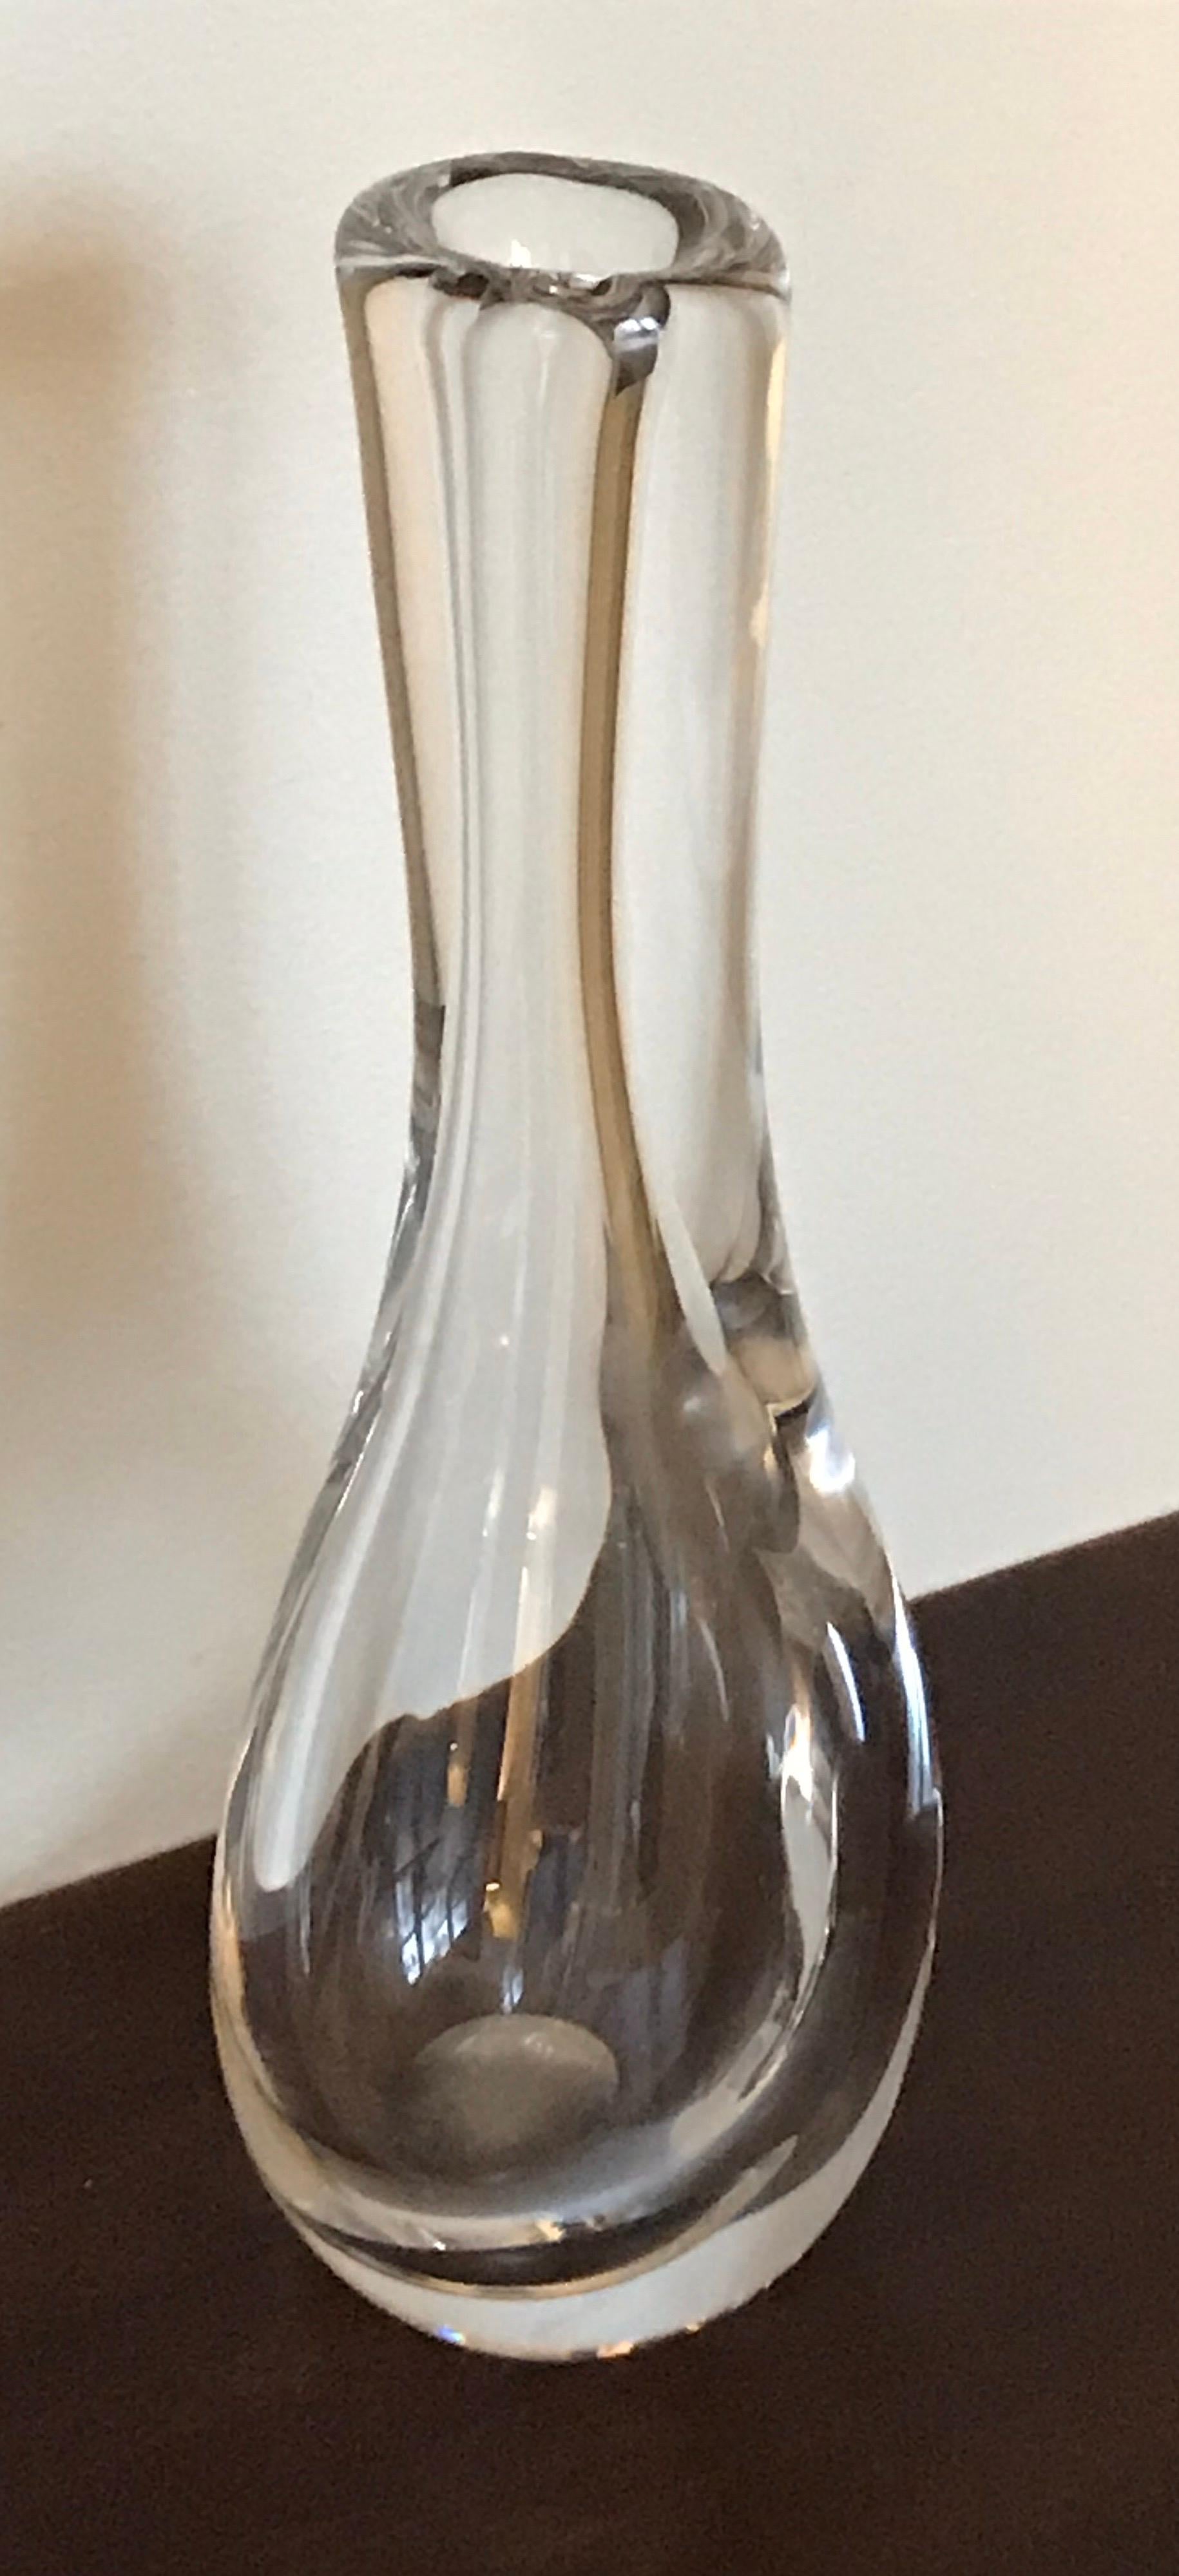 Organic shaped clear crystal vase by Goran Warff for Kosta Boda, Finland, signed.